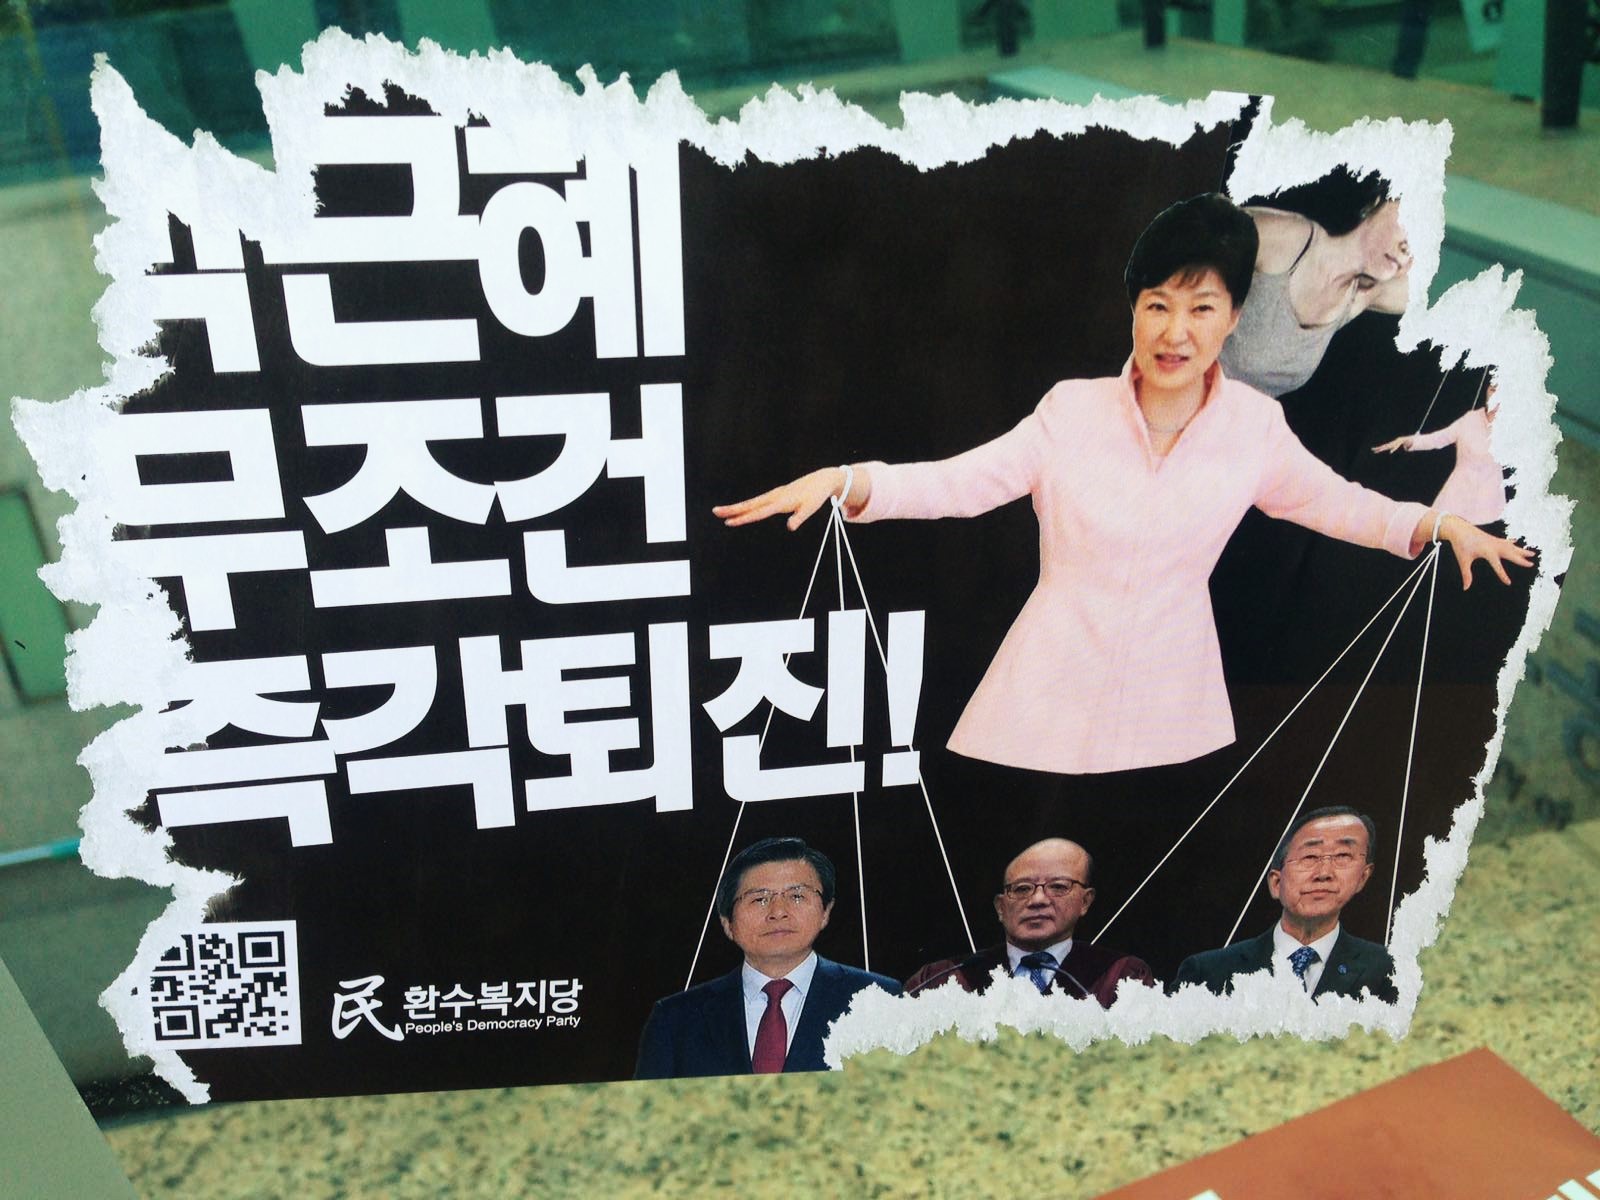 Sur cette affiche placardée à Séoul, appelant à la destitution de la la présidente sud-coréenne présentée comme une marionnette, on peut lire : "Park Geun-hye, démission immédiate et sans condition". Ce poster, copie parodique d'affiches de partis officiels, jusque dans le nom du parti inventé de toutes pièces "Parti de la démocratie du peuple", est caractéristique du vent de liberté qui anime la jeunesse. Cette photo prise à Séoul date du 11 décembre 2016, deux jours après que l'Assemblée nationale a voté la destitution de la présidente le vendredi 9 décembre.